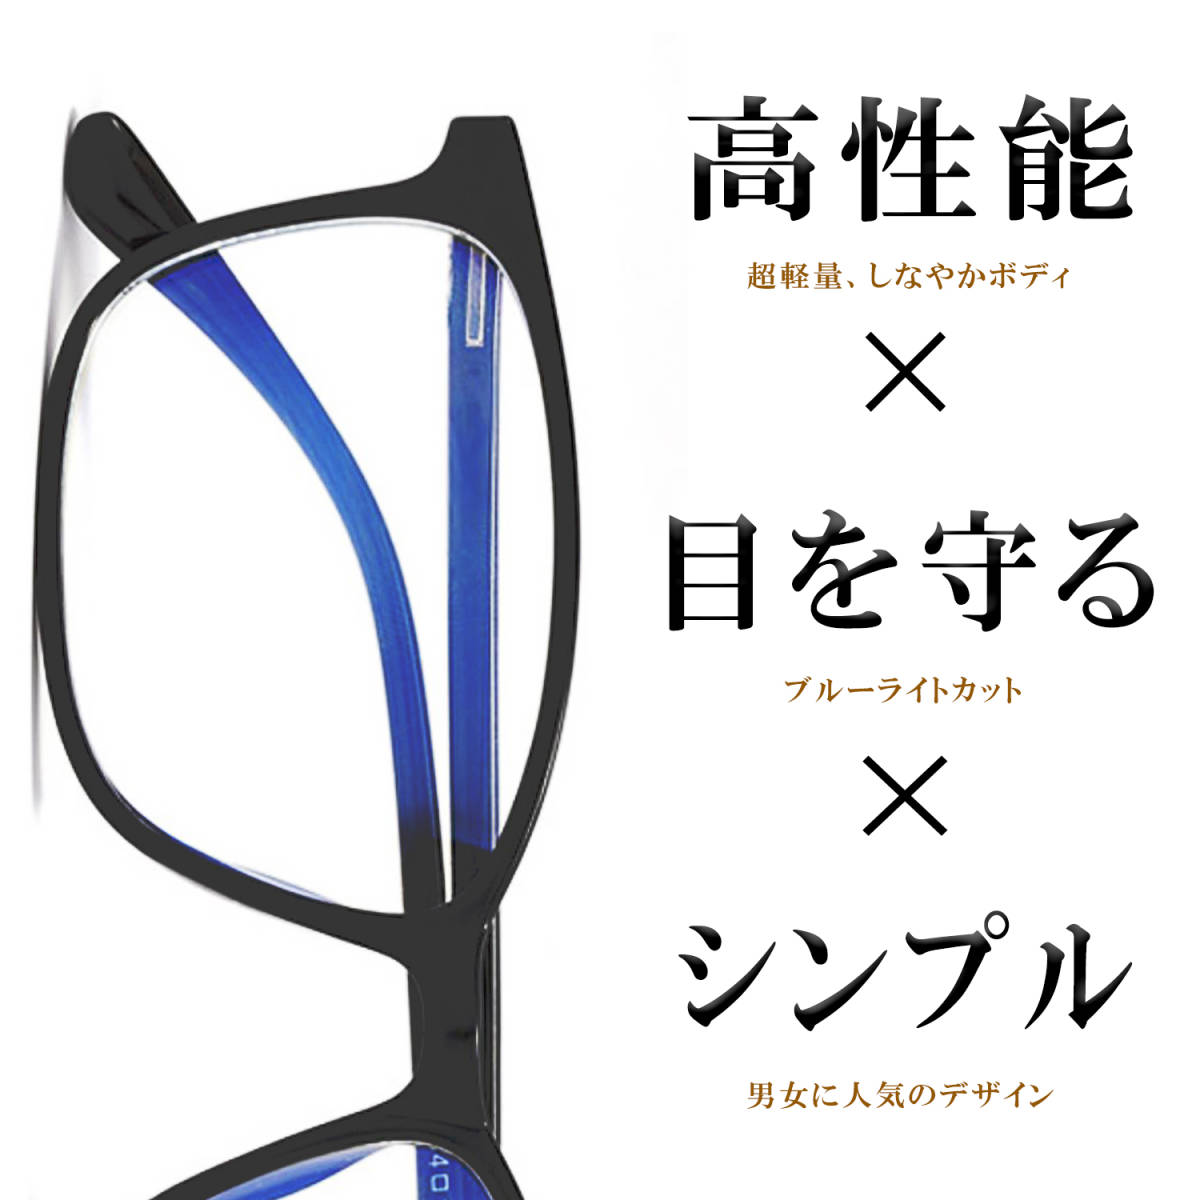 新品 ブルーライトカット メガネ 超軽量 18グラム 伊達眼鏡 度なし シンプル